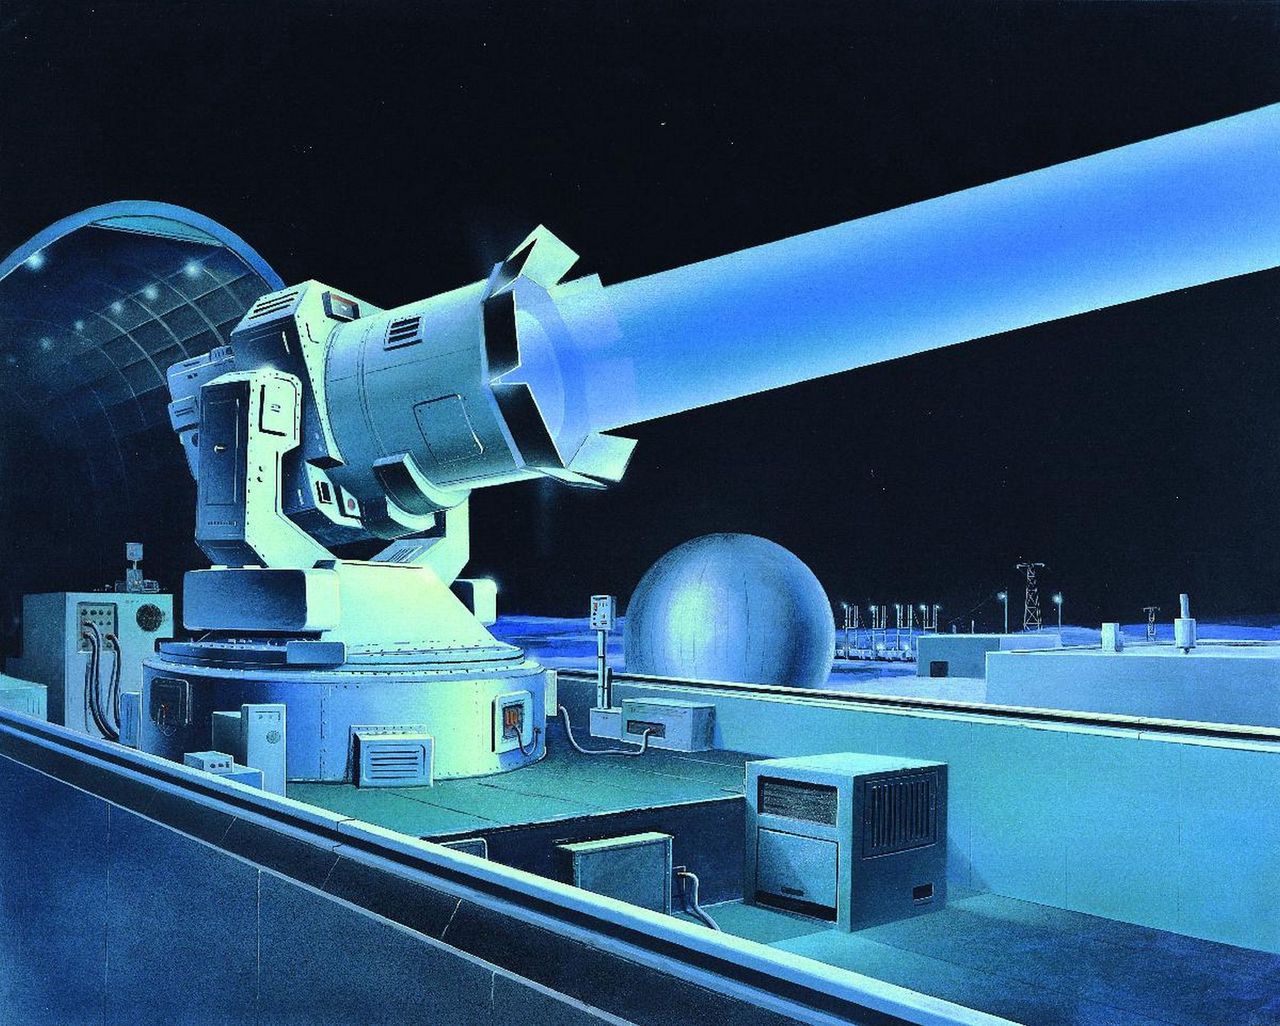 Amerykańska wizualizacja z lat 80., przedstawiająca radziecki laser antysatelitarny